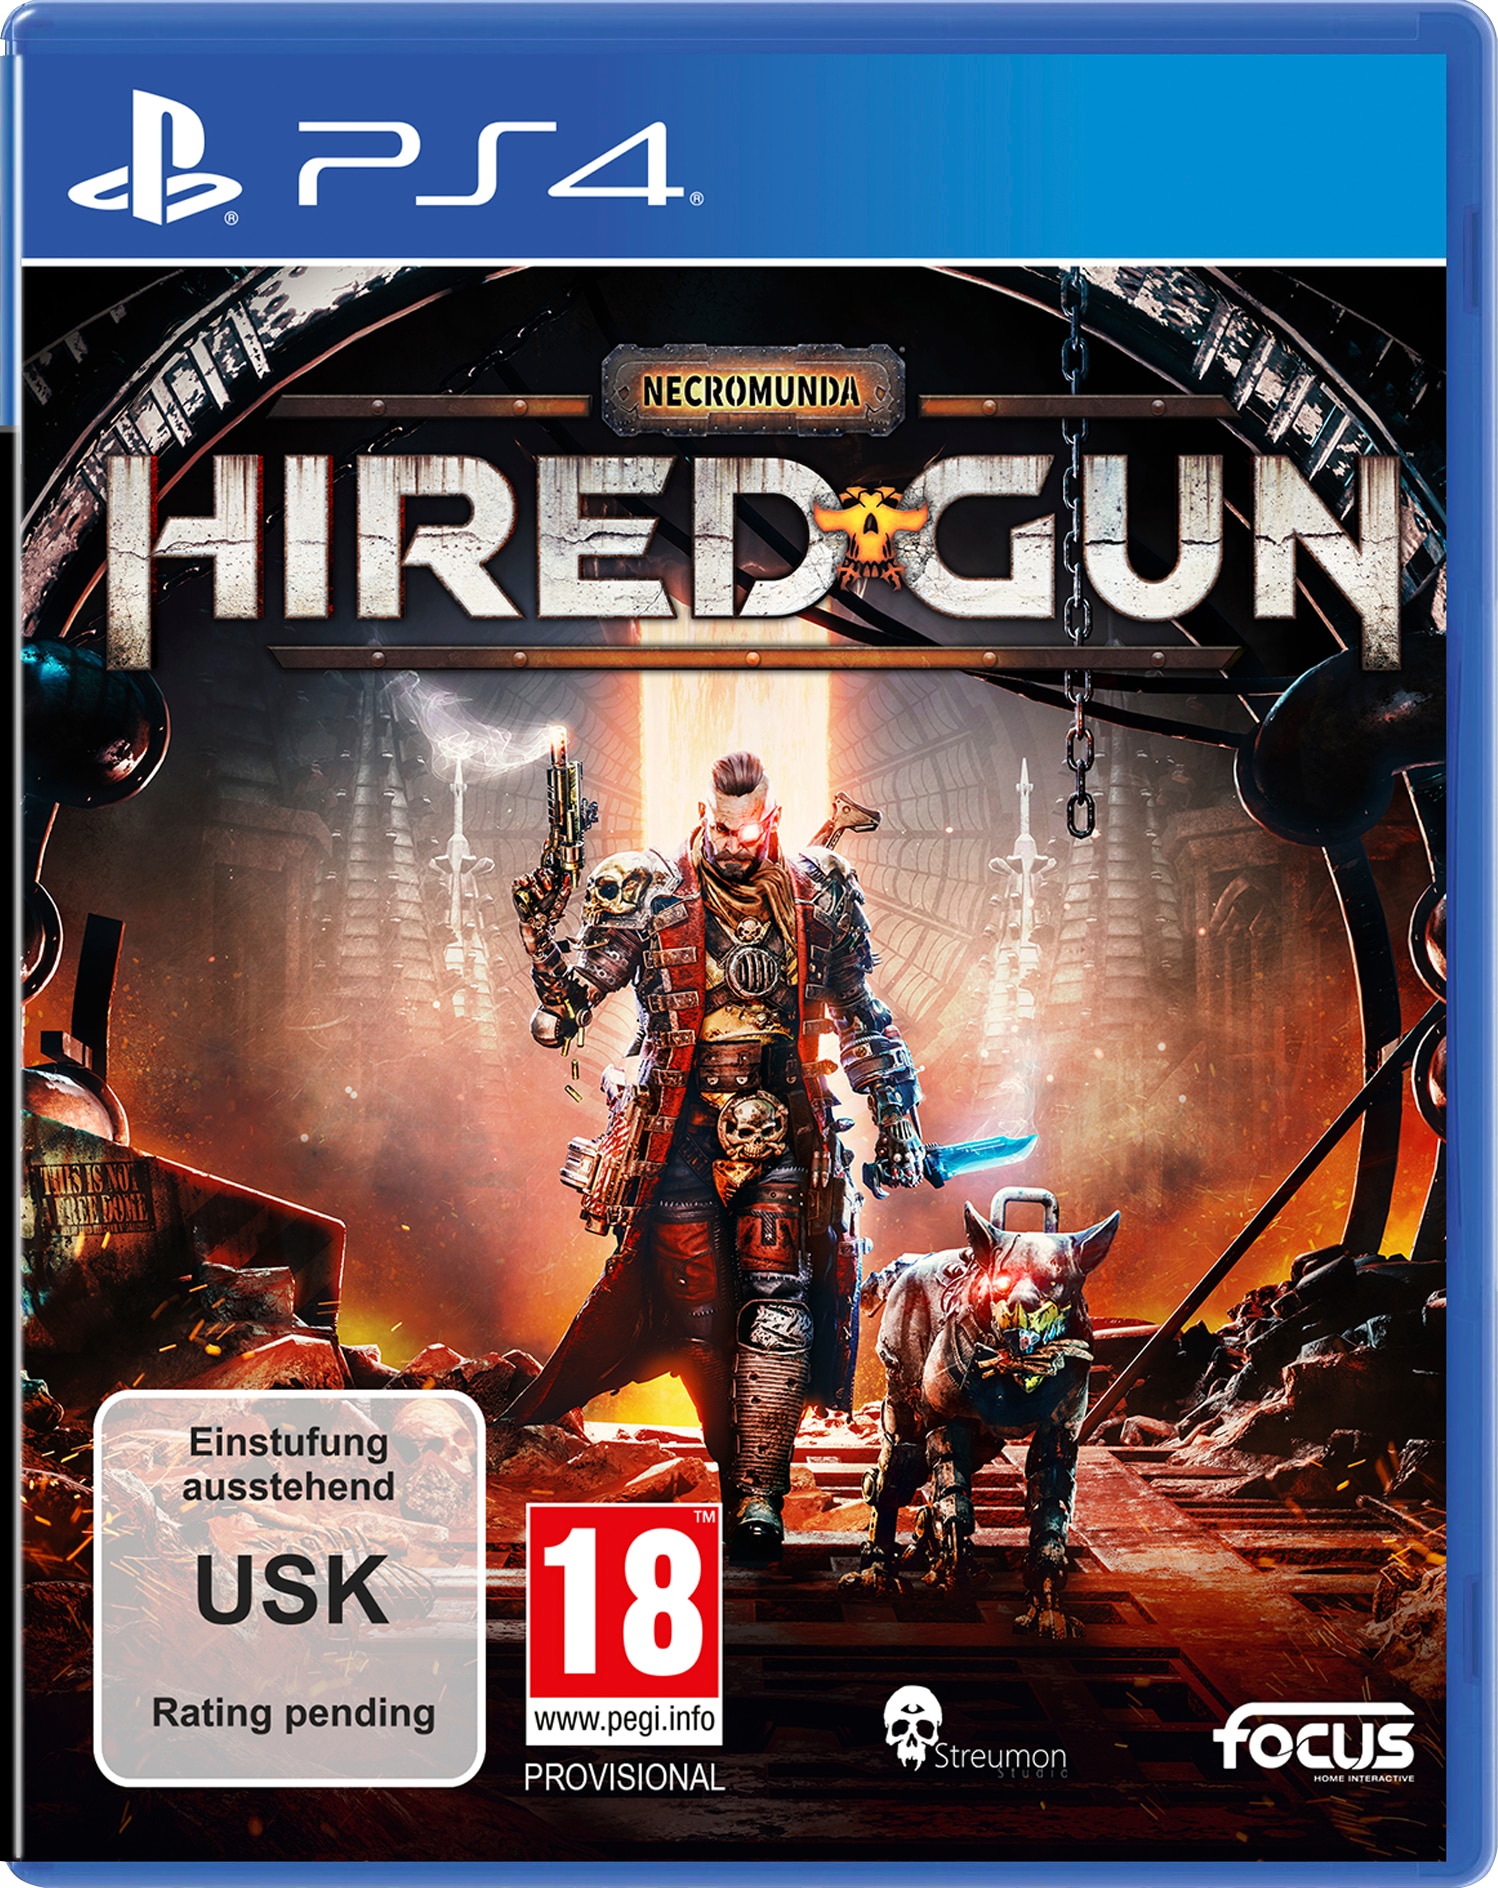 Focus Spielesoftware »Necromunda: Hired Gun«, PlayStation 4